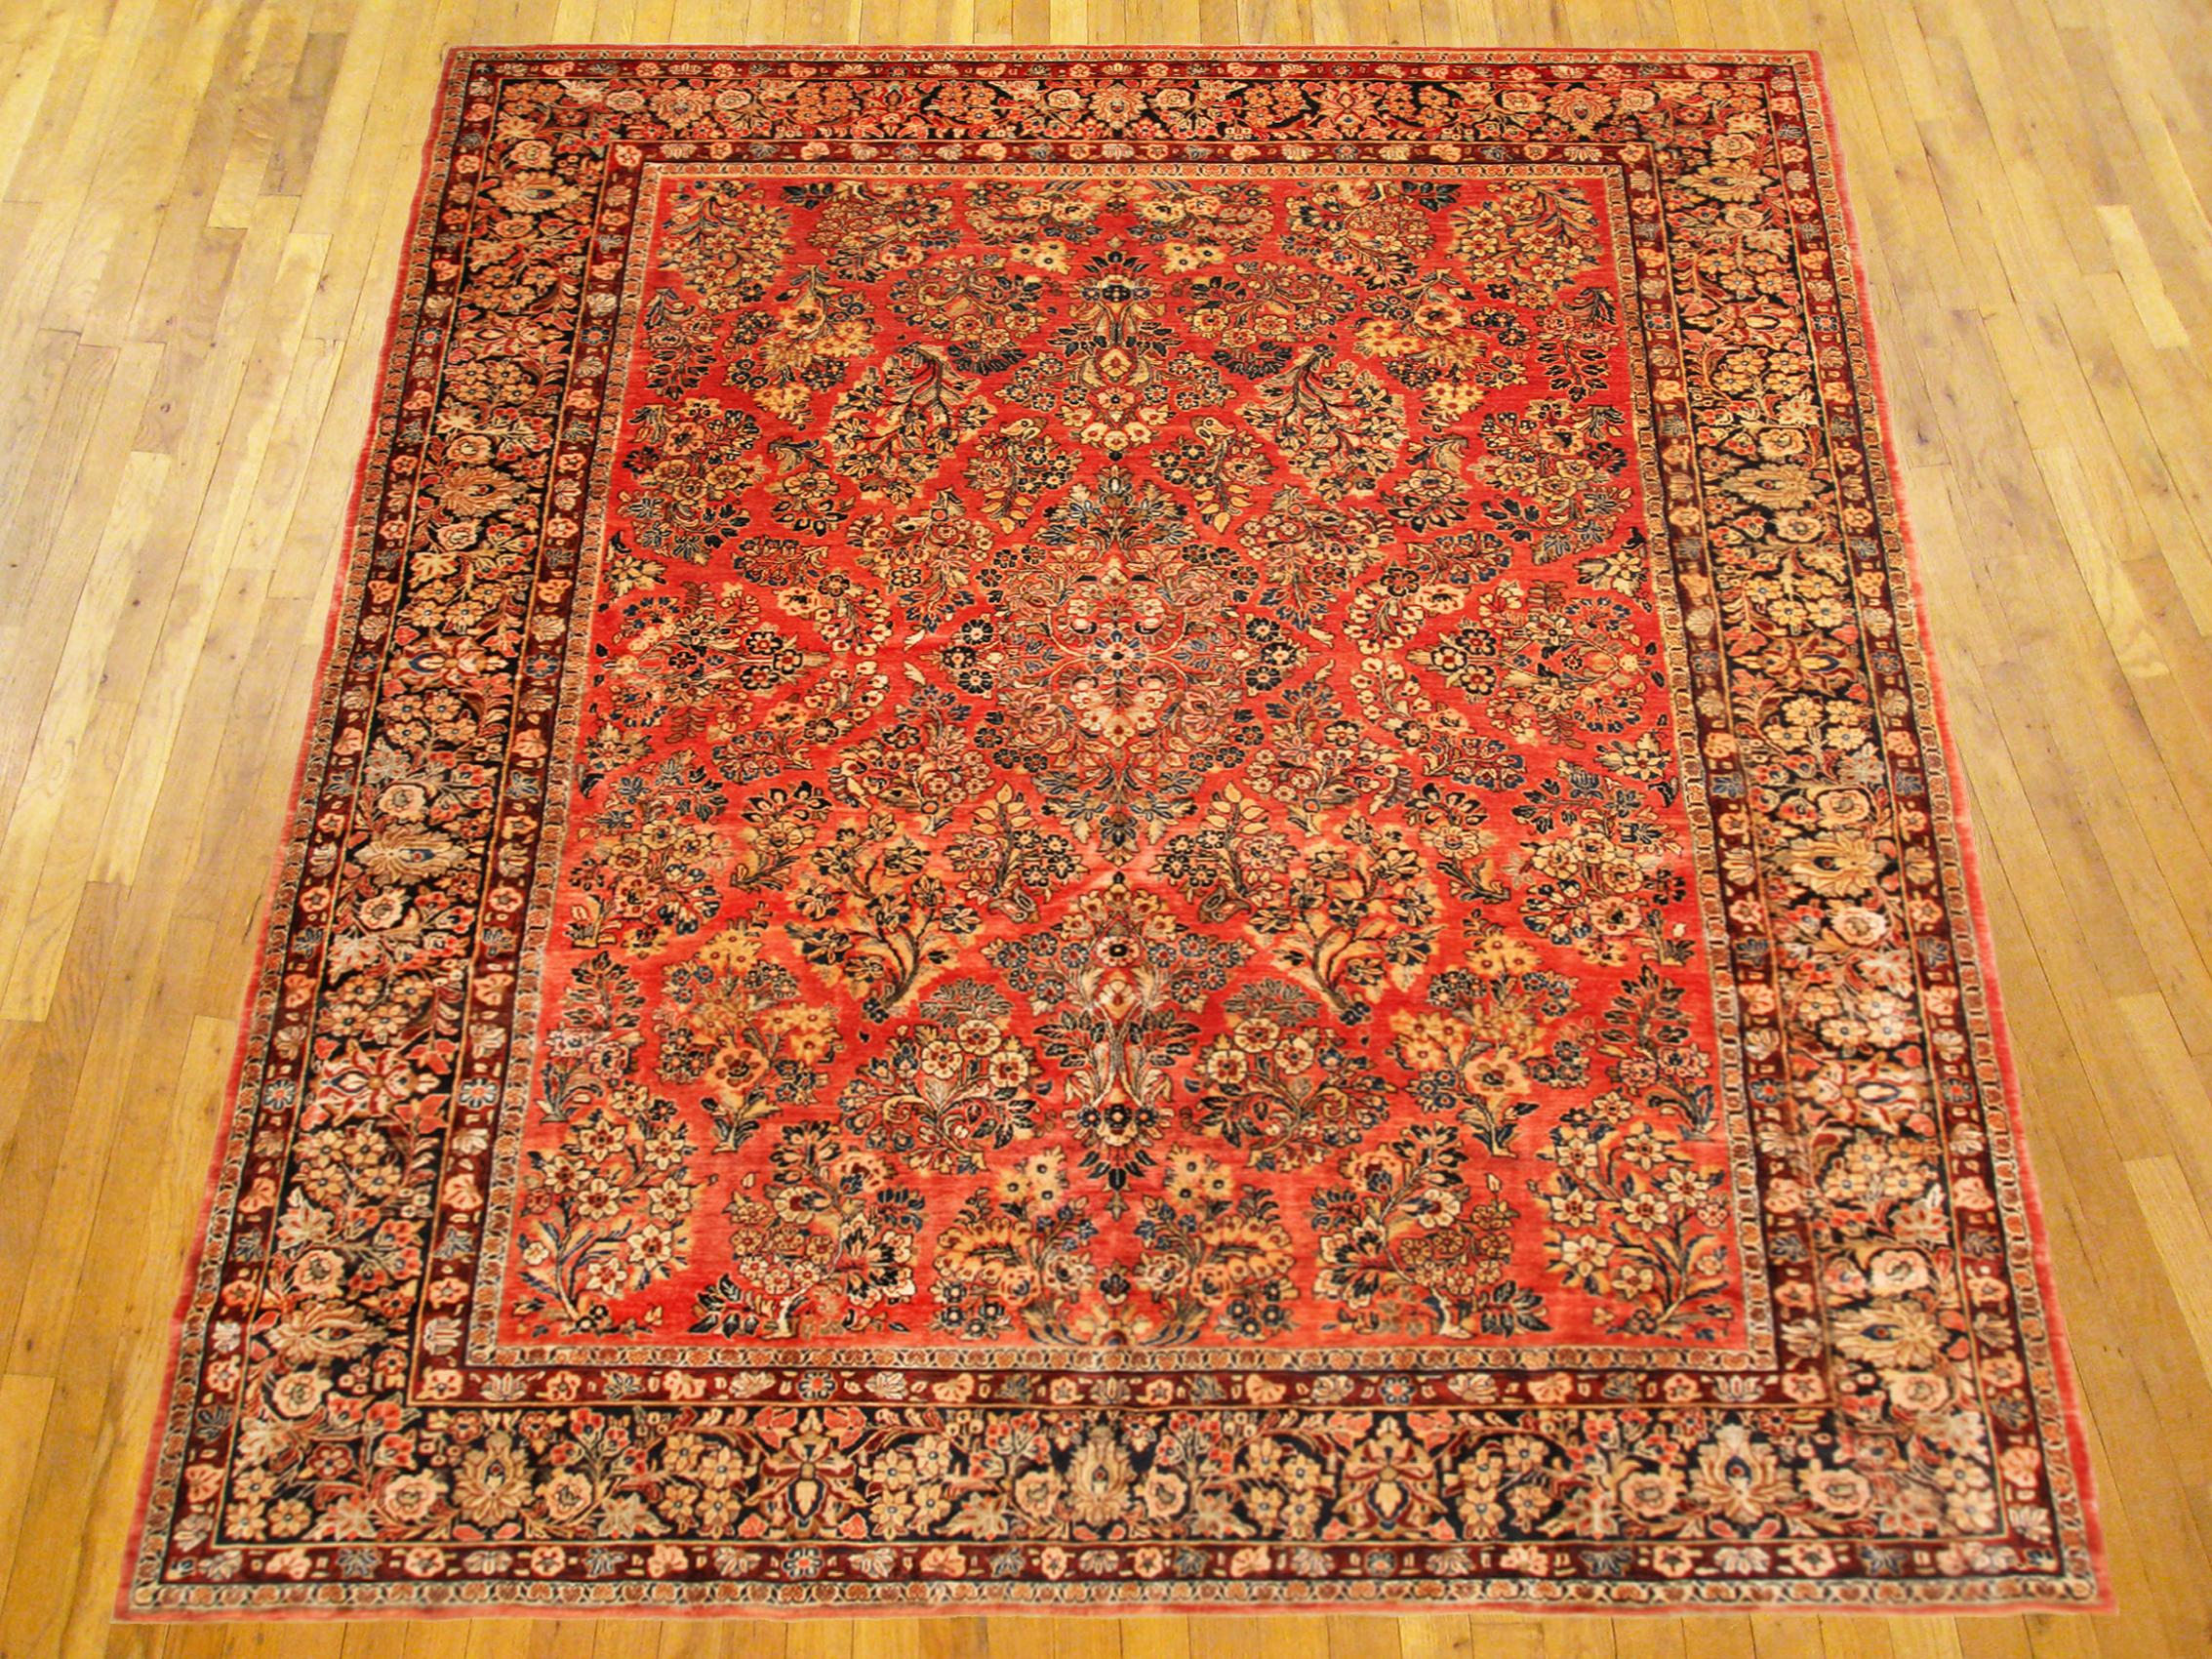 Antique Persian Sarouk Oriental rug, circa 1920, room size.

An antique Persian Sarouk oriental rug, size 11'7